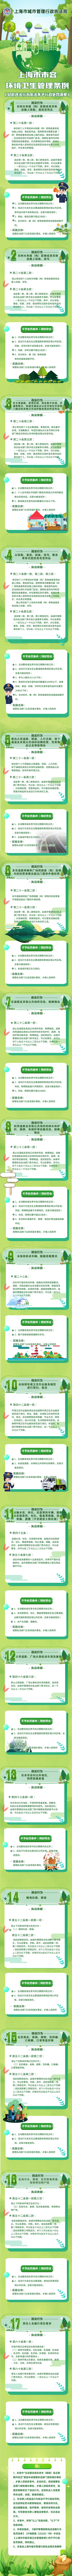 上海市市容环境卫生管理条例《轻微违法行为依法不予行政处罚清单》.jpg